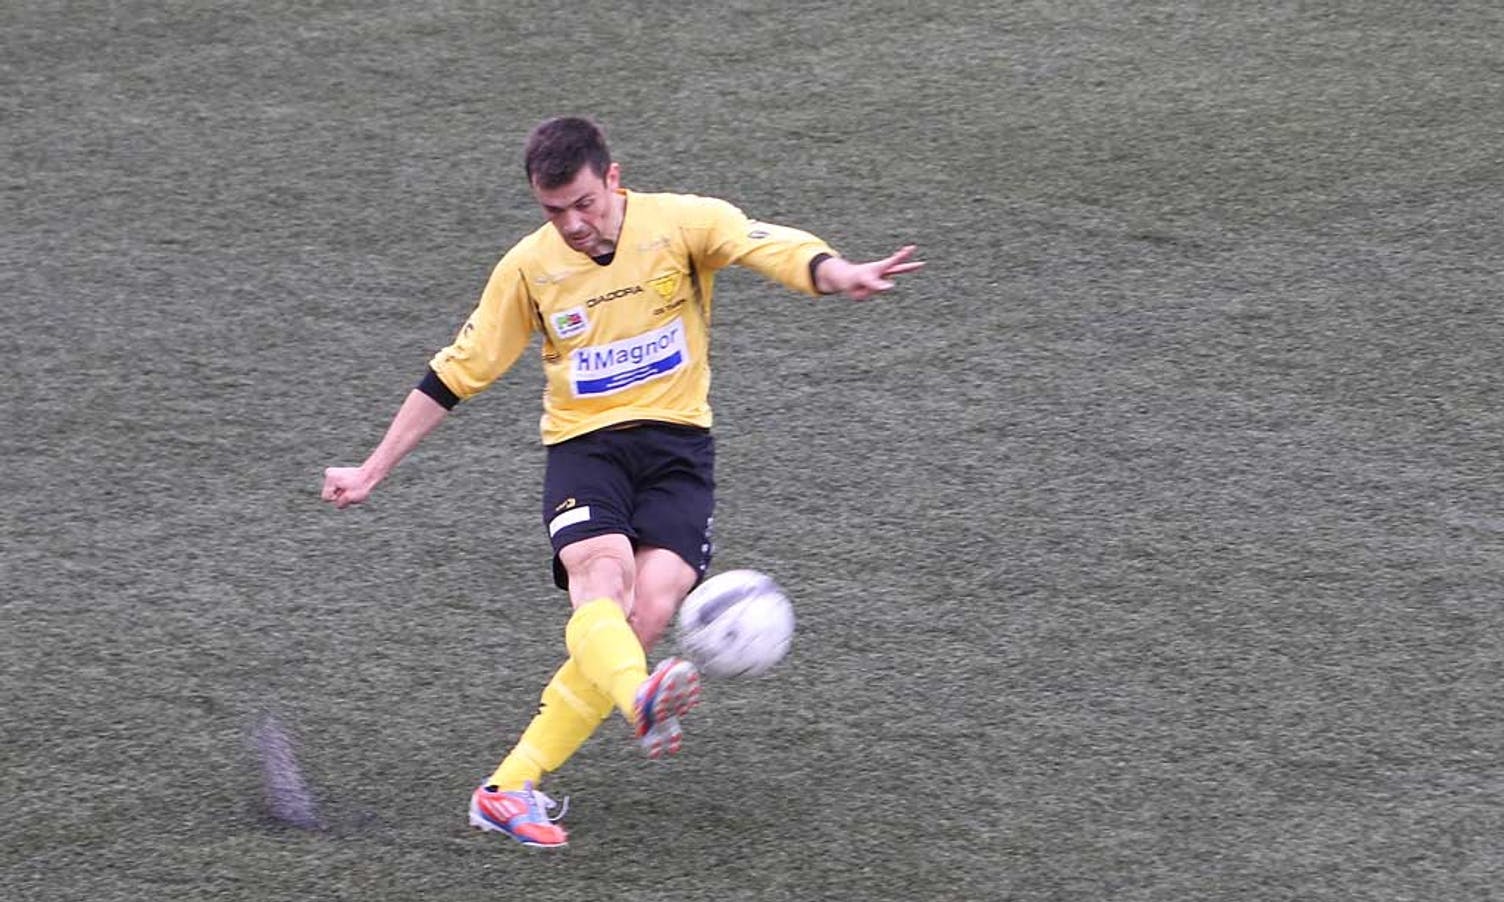 Emilis spelte 6. divisjon i fjor, men har likevel kome inn og styrka forsvaret til Os. (Foto: KVB)